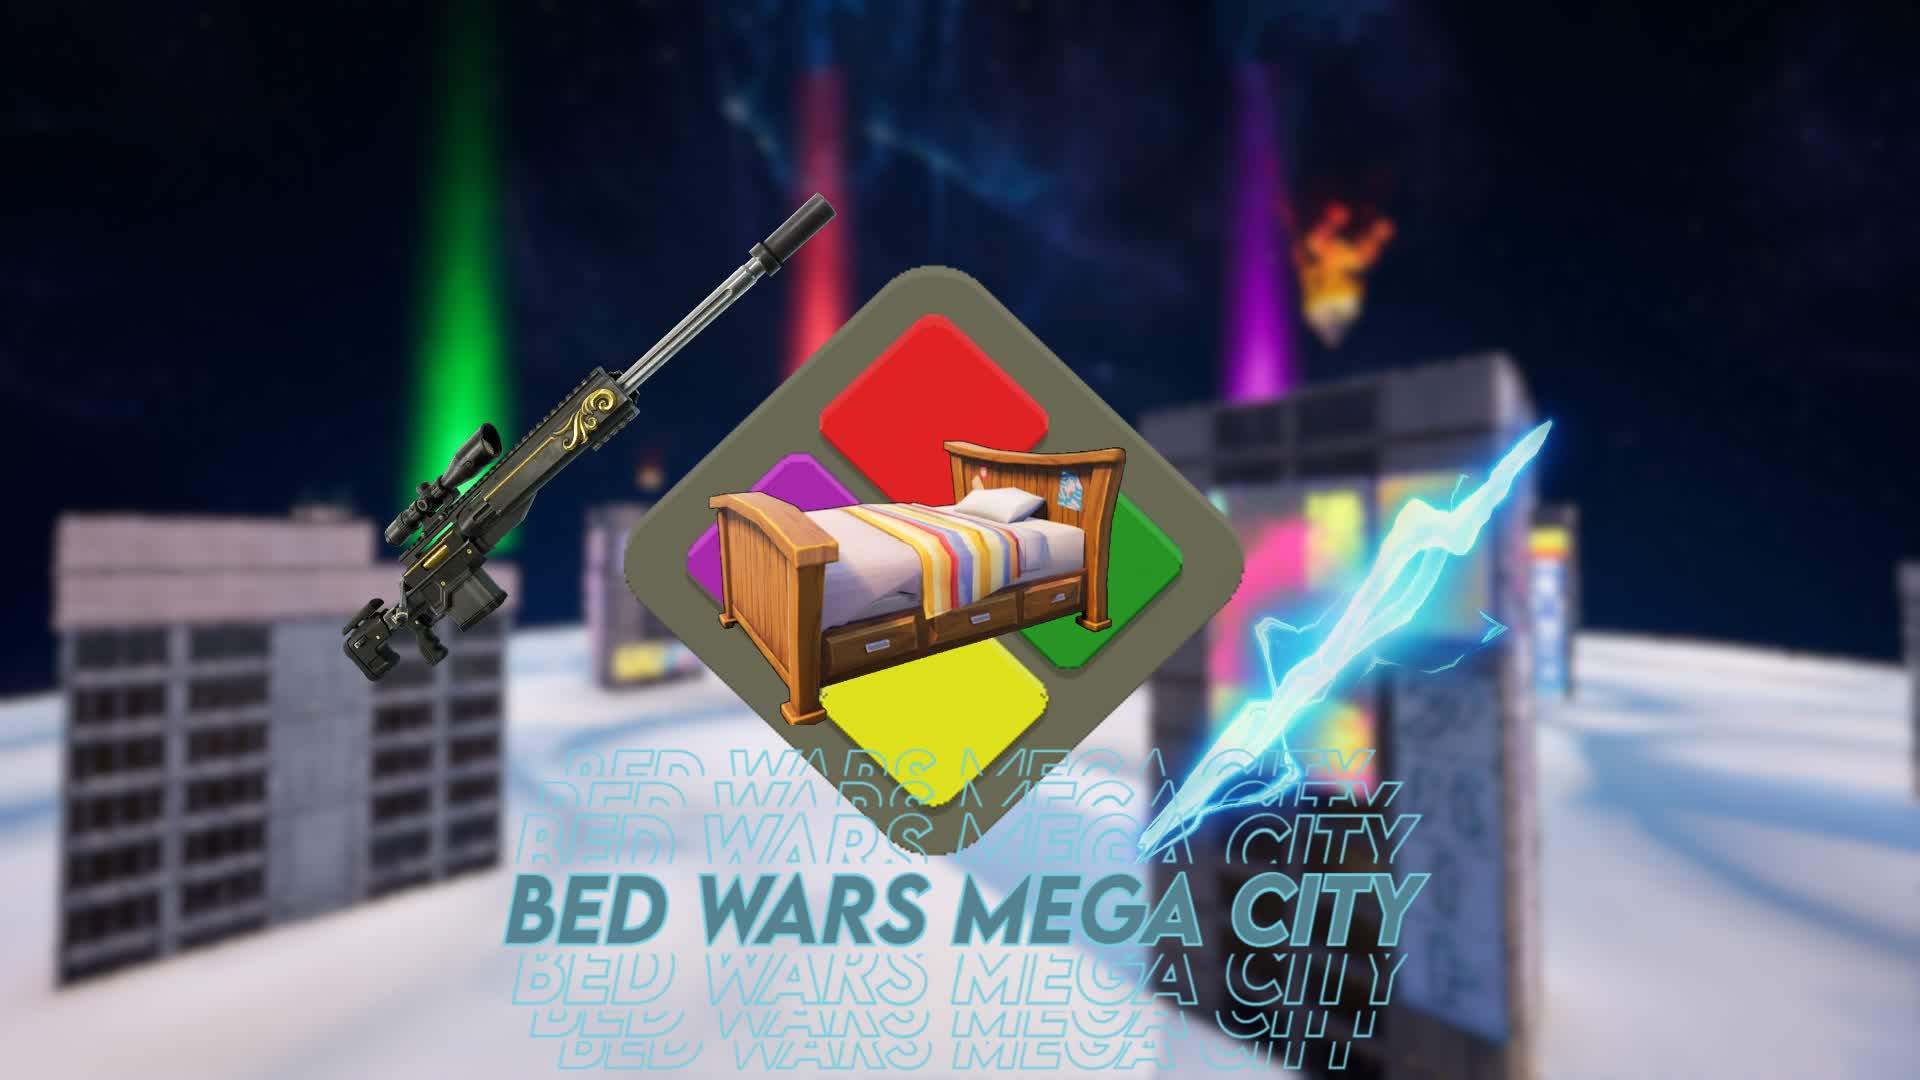 Bedwars - MEGA CITY!